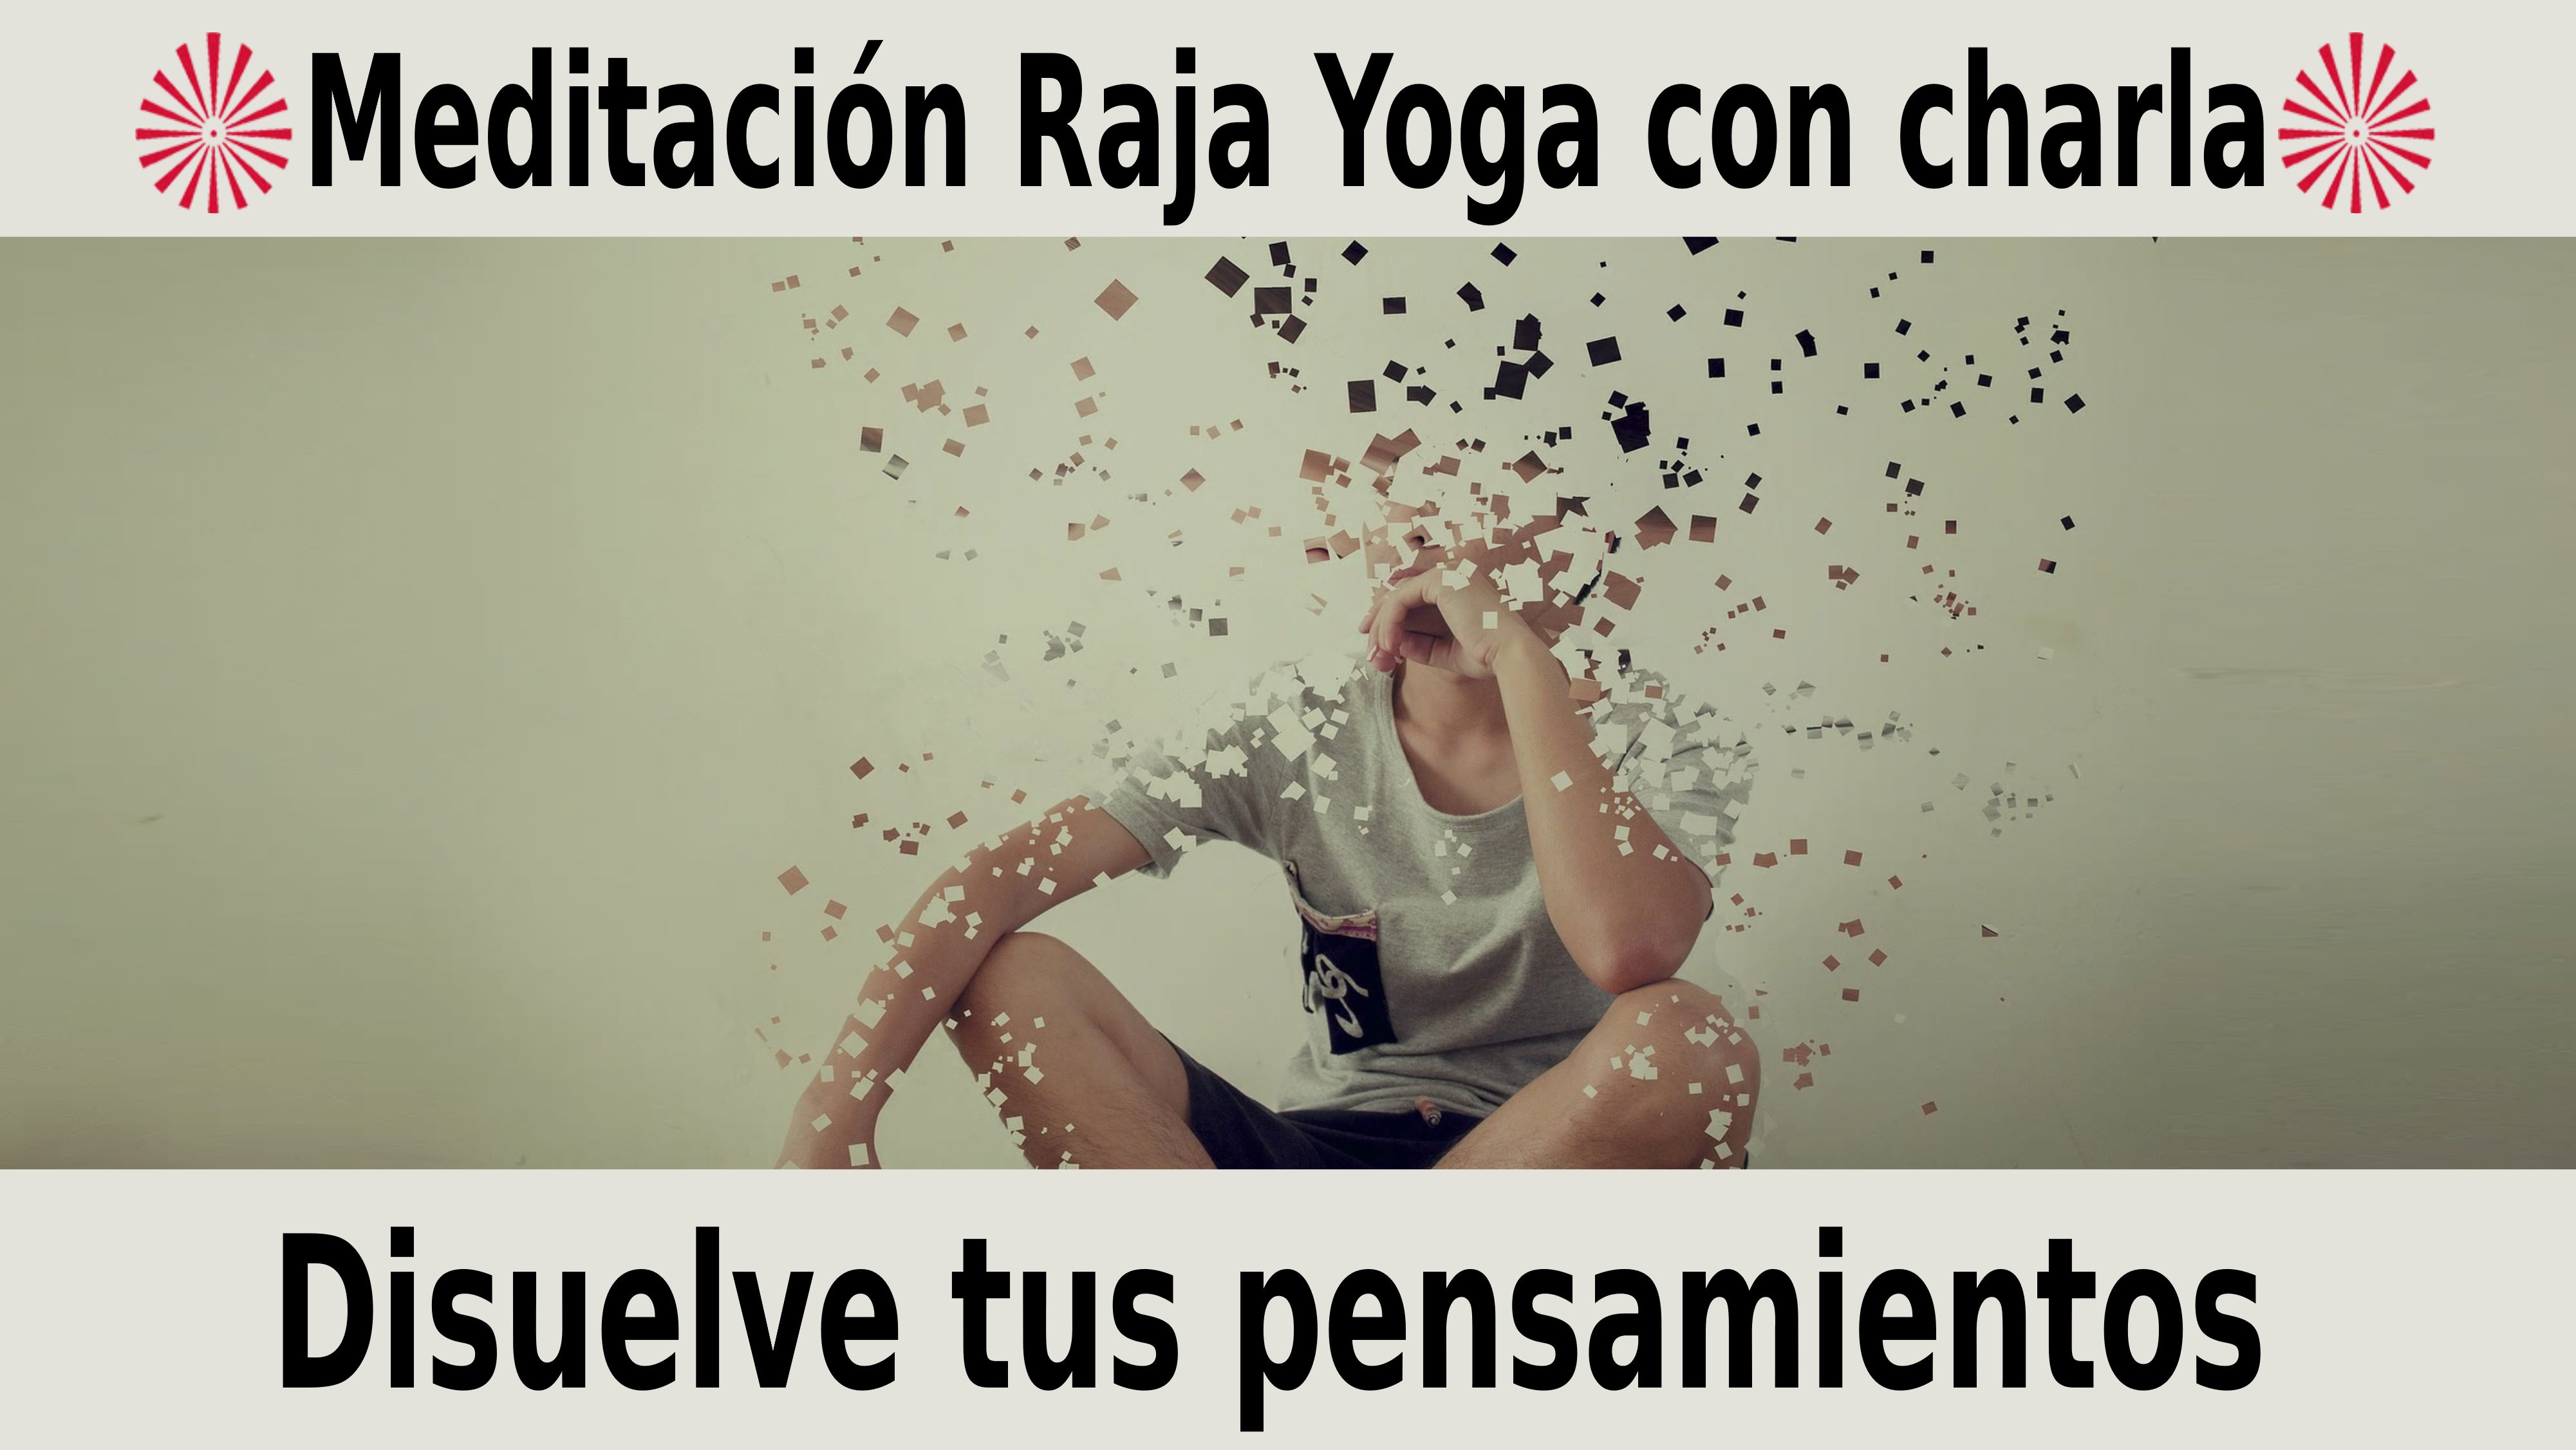 Meditación Raja Yoga con charla:  Disuelve tus pensamientos (27 Noviembre 2020) On-line desde Madrid